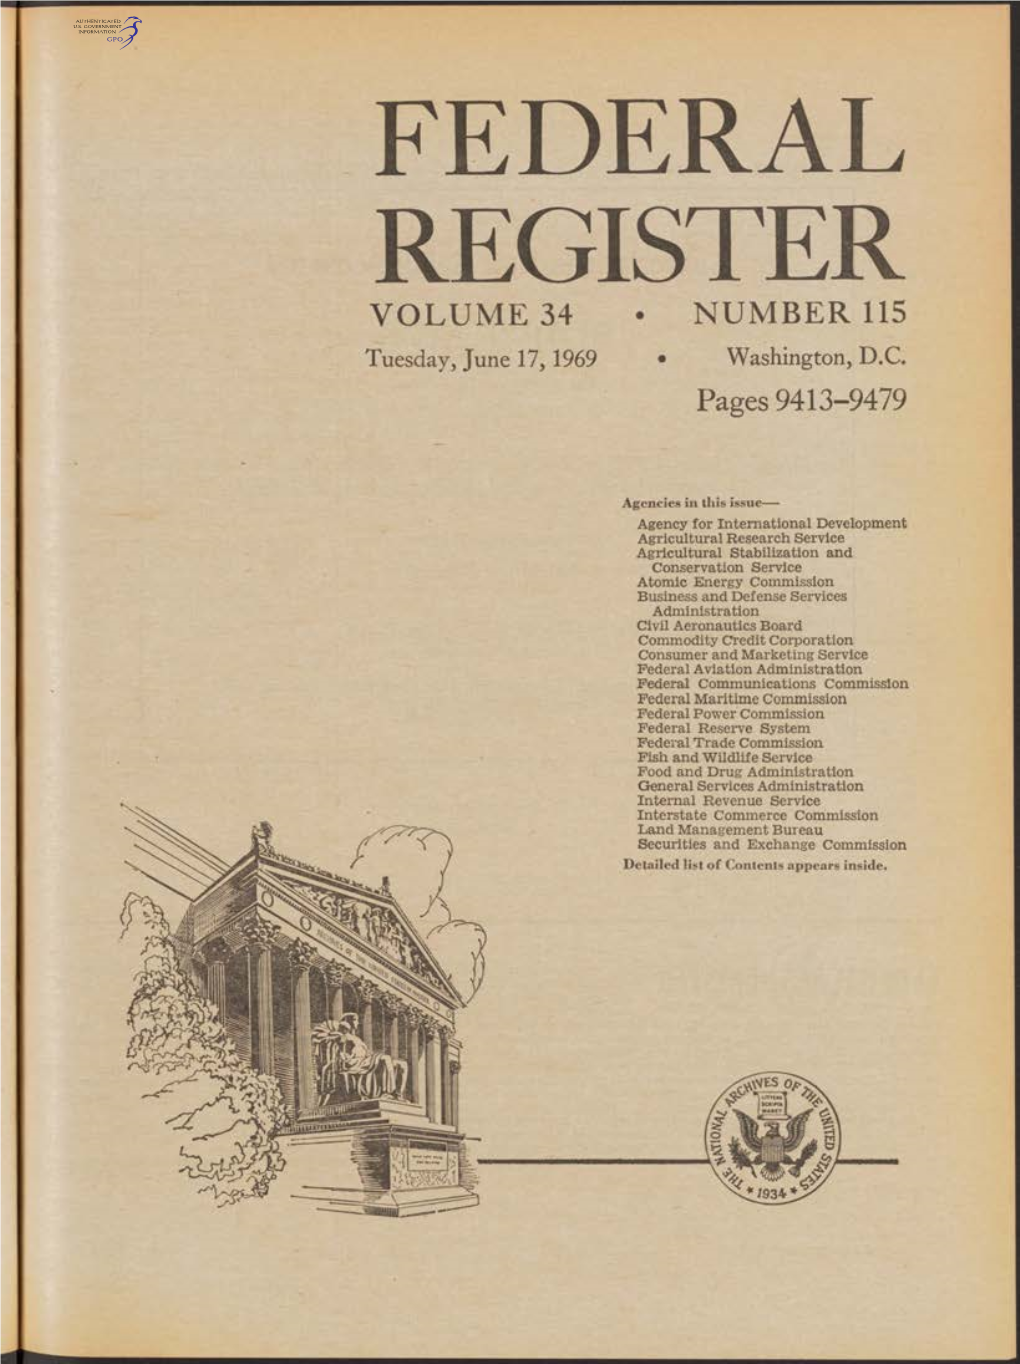 FEDERAL REGISTER VOLUME 34 • NUMBER 115 Tuesday, June 17,1969 • Washington, D.C